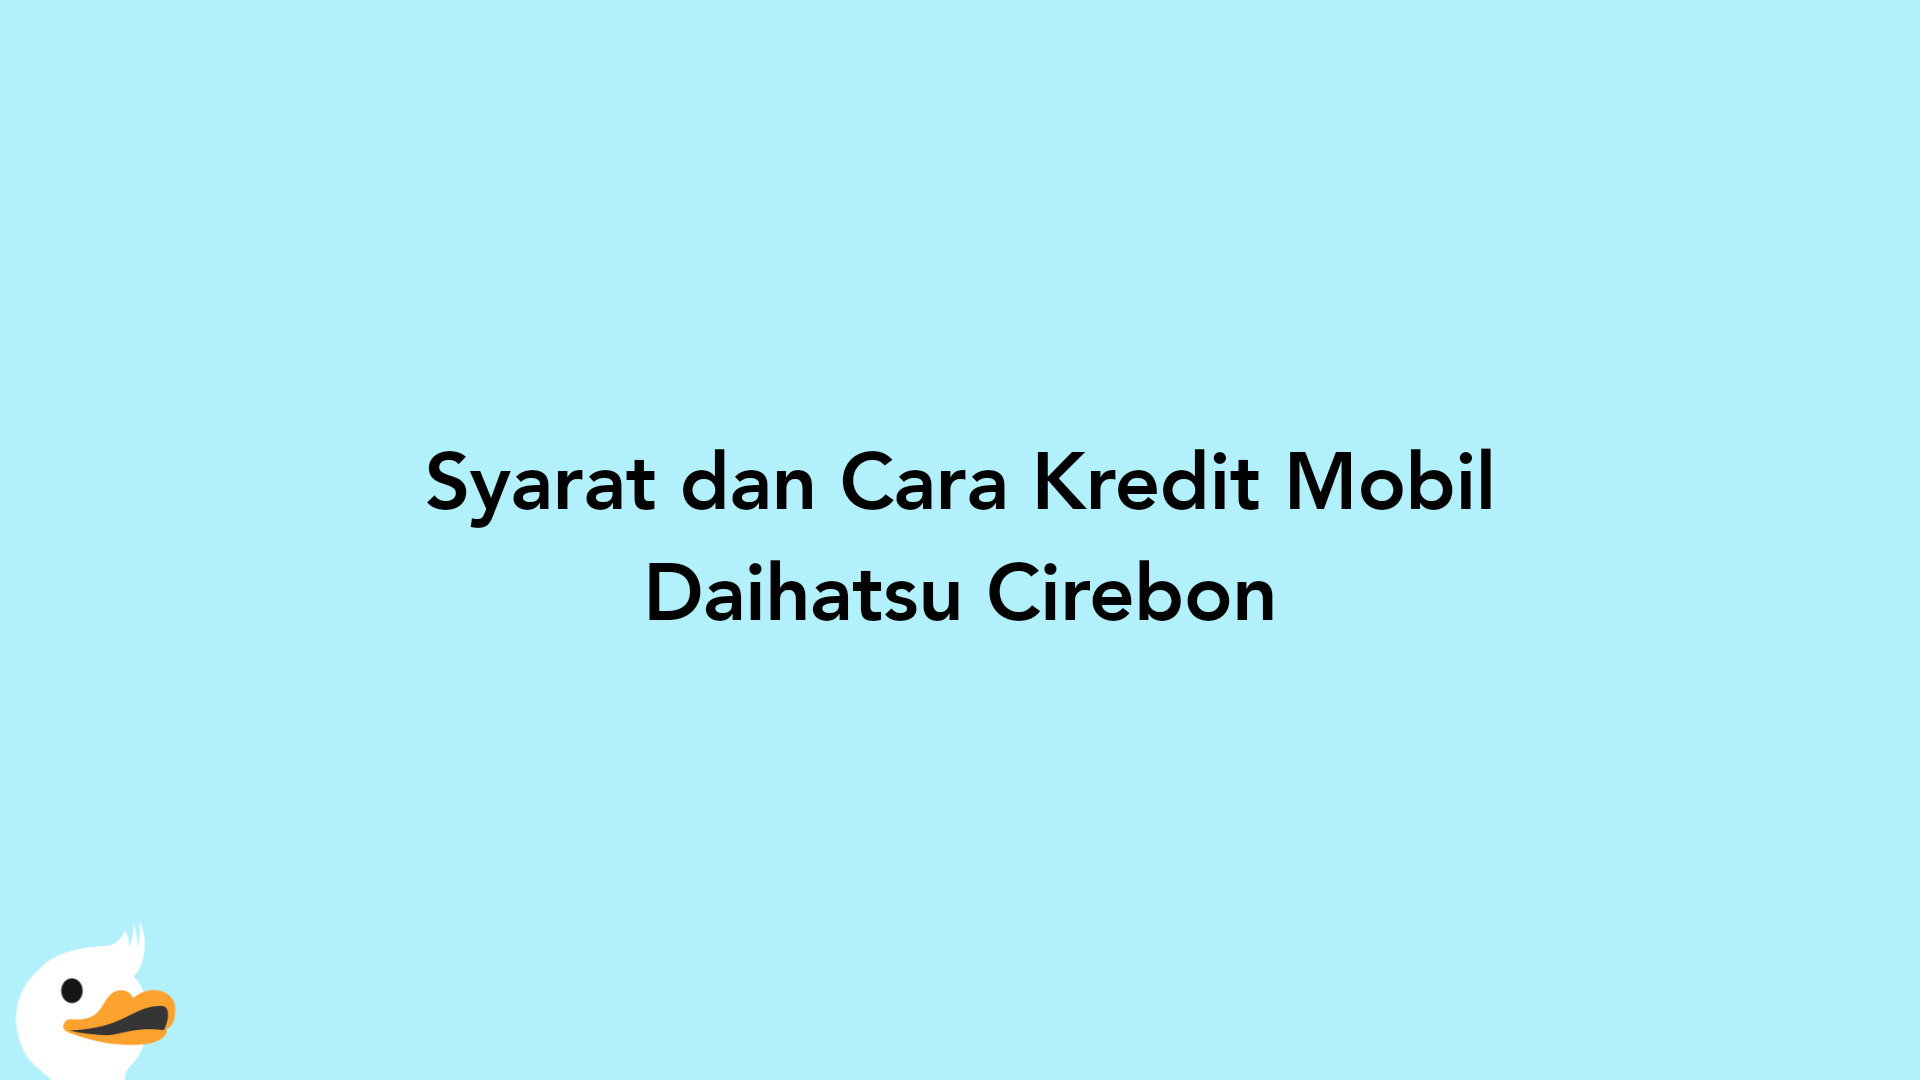 Syarat dan Cara Kredit Mobil Daihatsu Cirebon